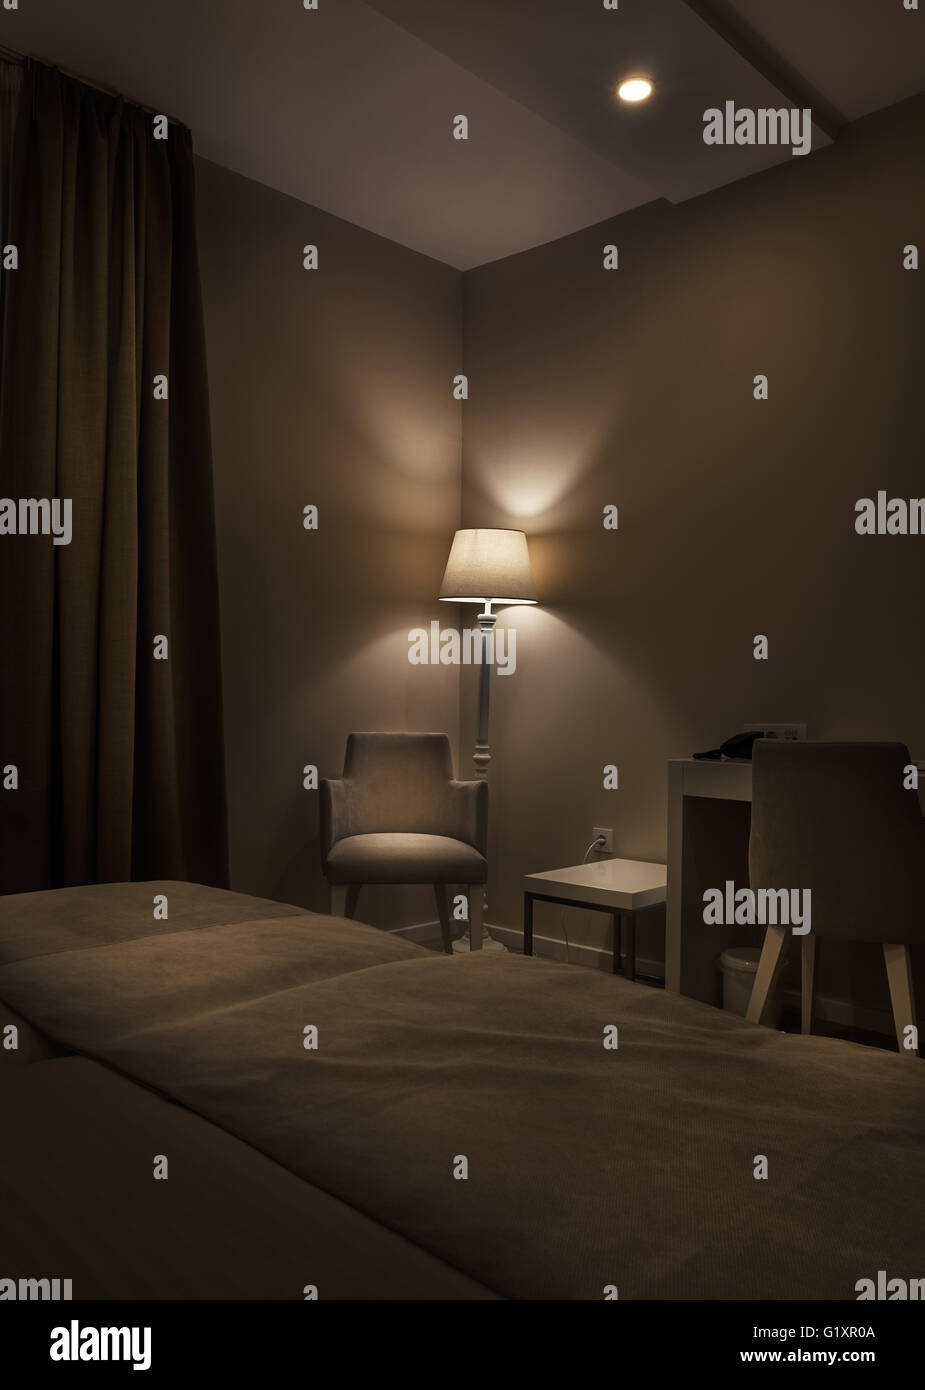 Detalles de la habitación de un hotel, y un sillón, lámparas retro grandes cortinas de color marrón oscuro, ambiente tranquilo durante la noche. Foto de stock